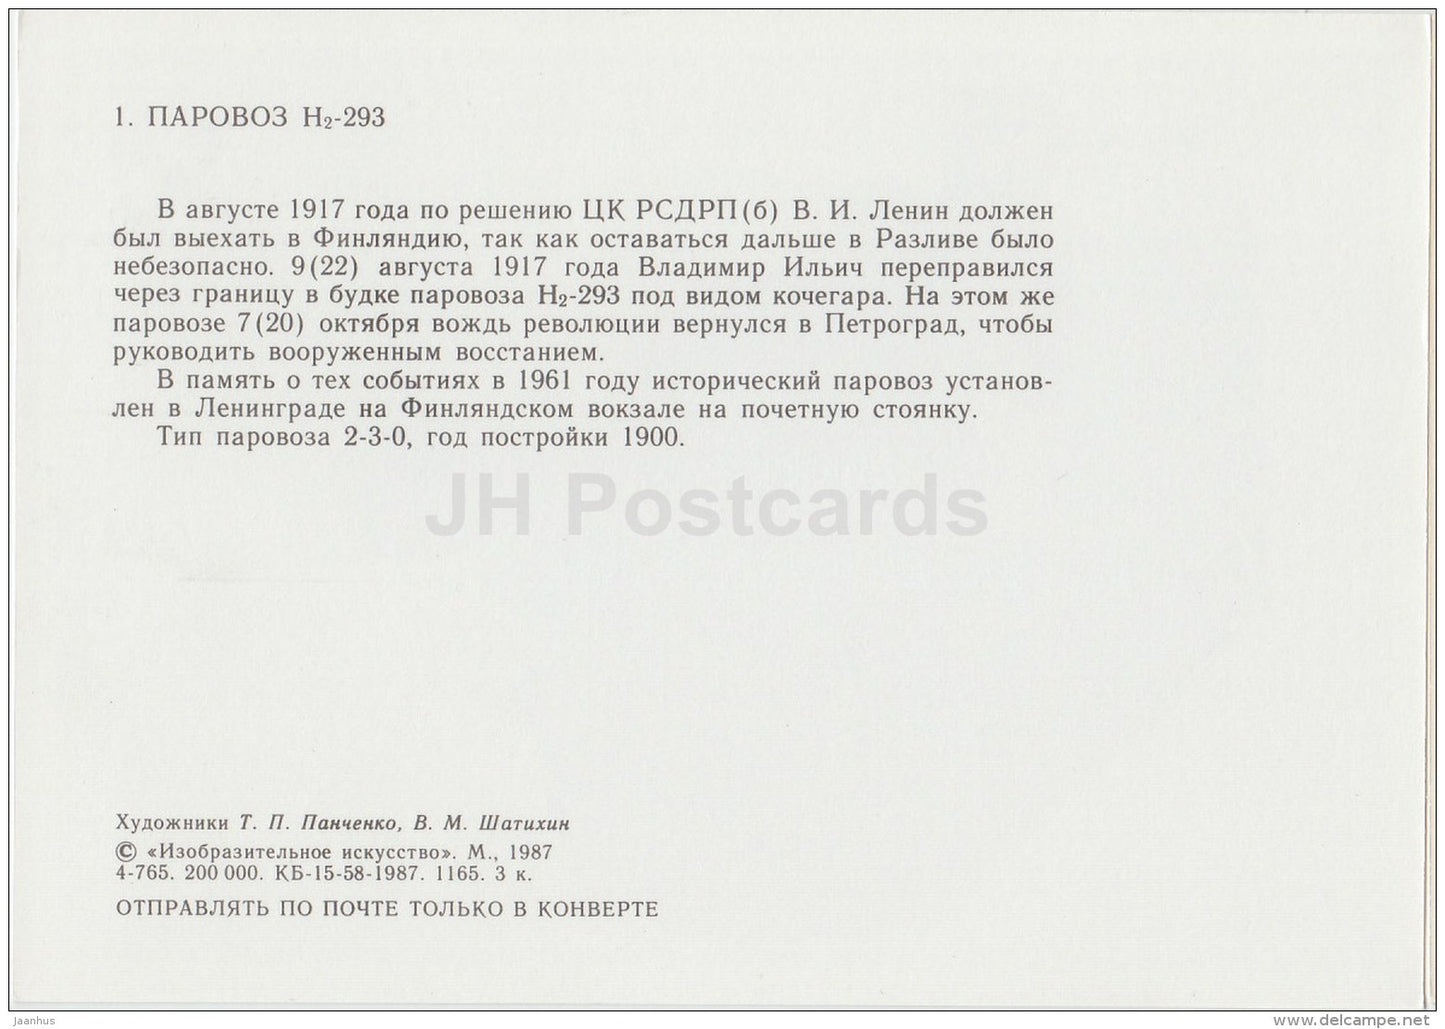 H2-293 - locomotive - train - railway - 1987 - Russia USSR - unused - JH Postcards